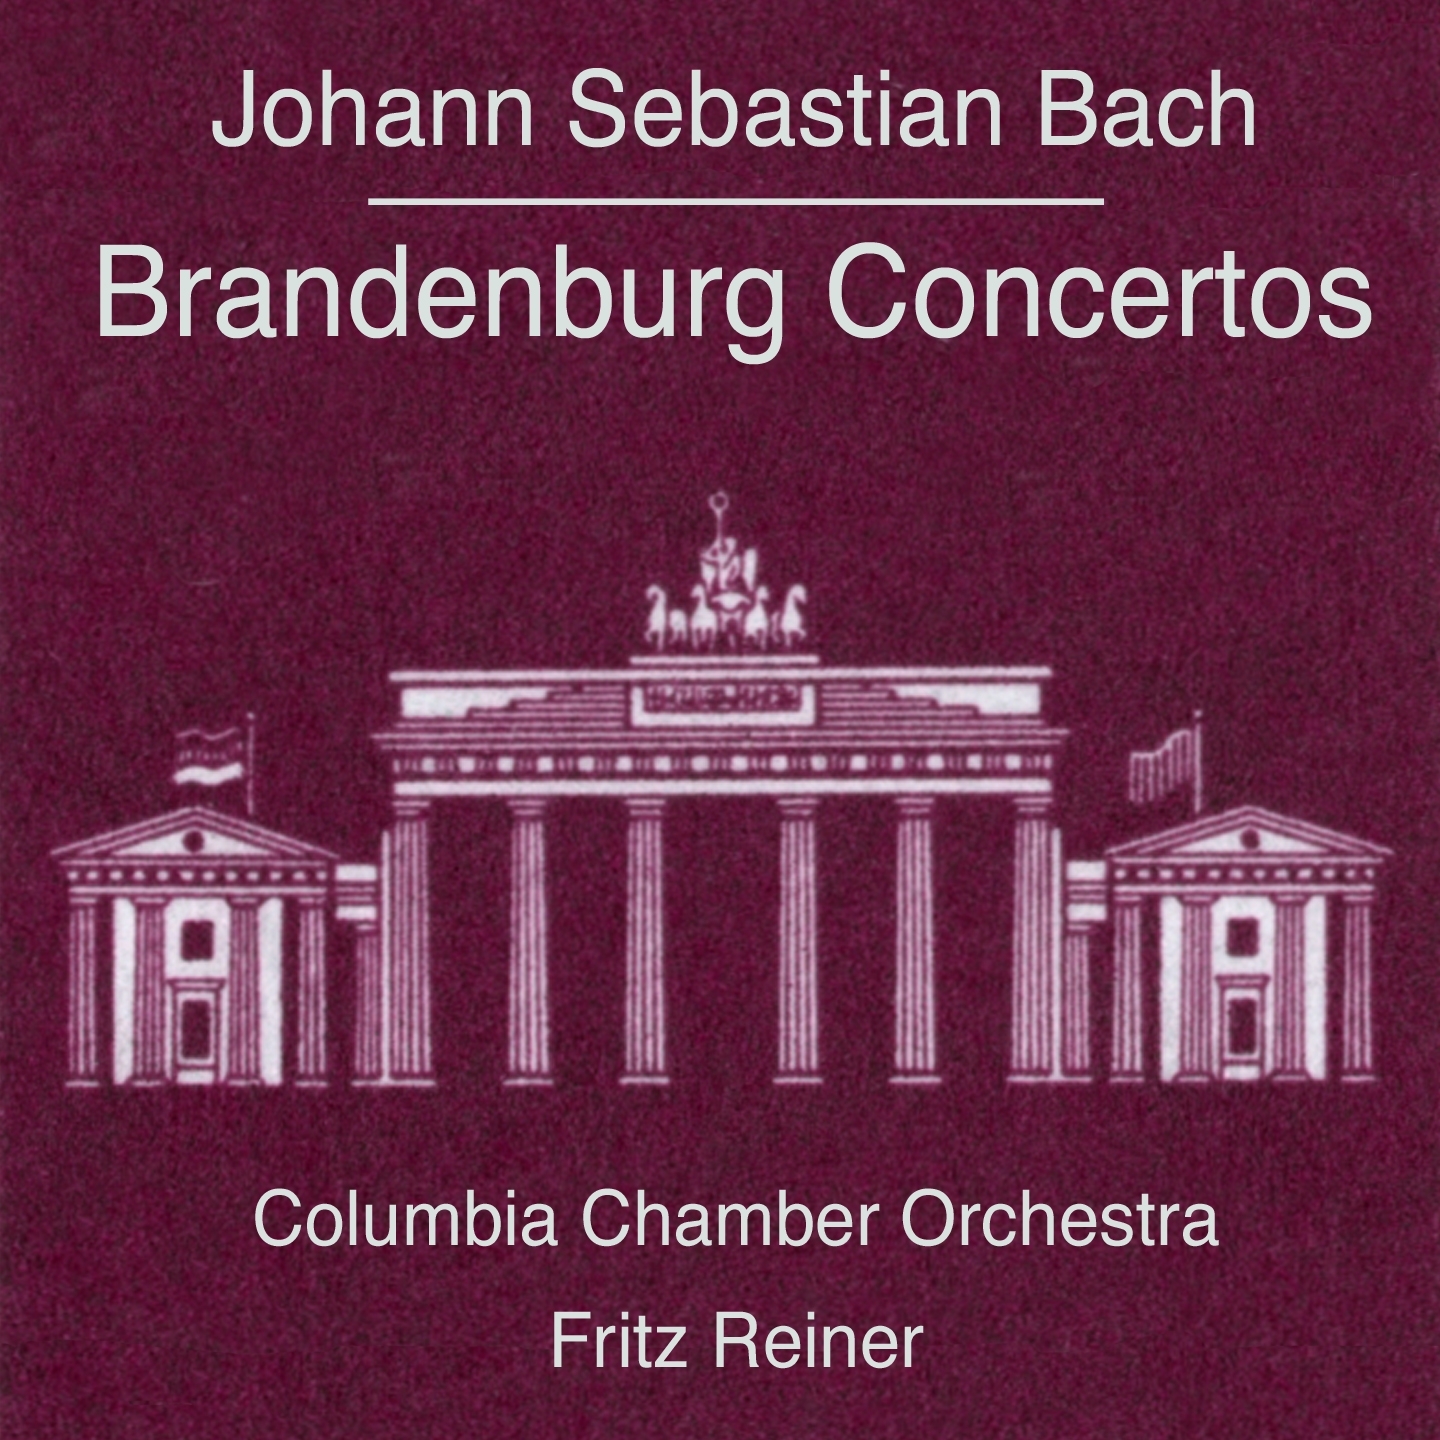 Brandenburg Concerto No. 3 in G Major, BWV 1048: I. Allegro - Agitato